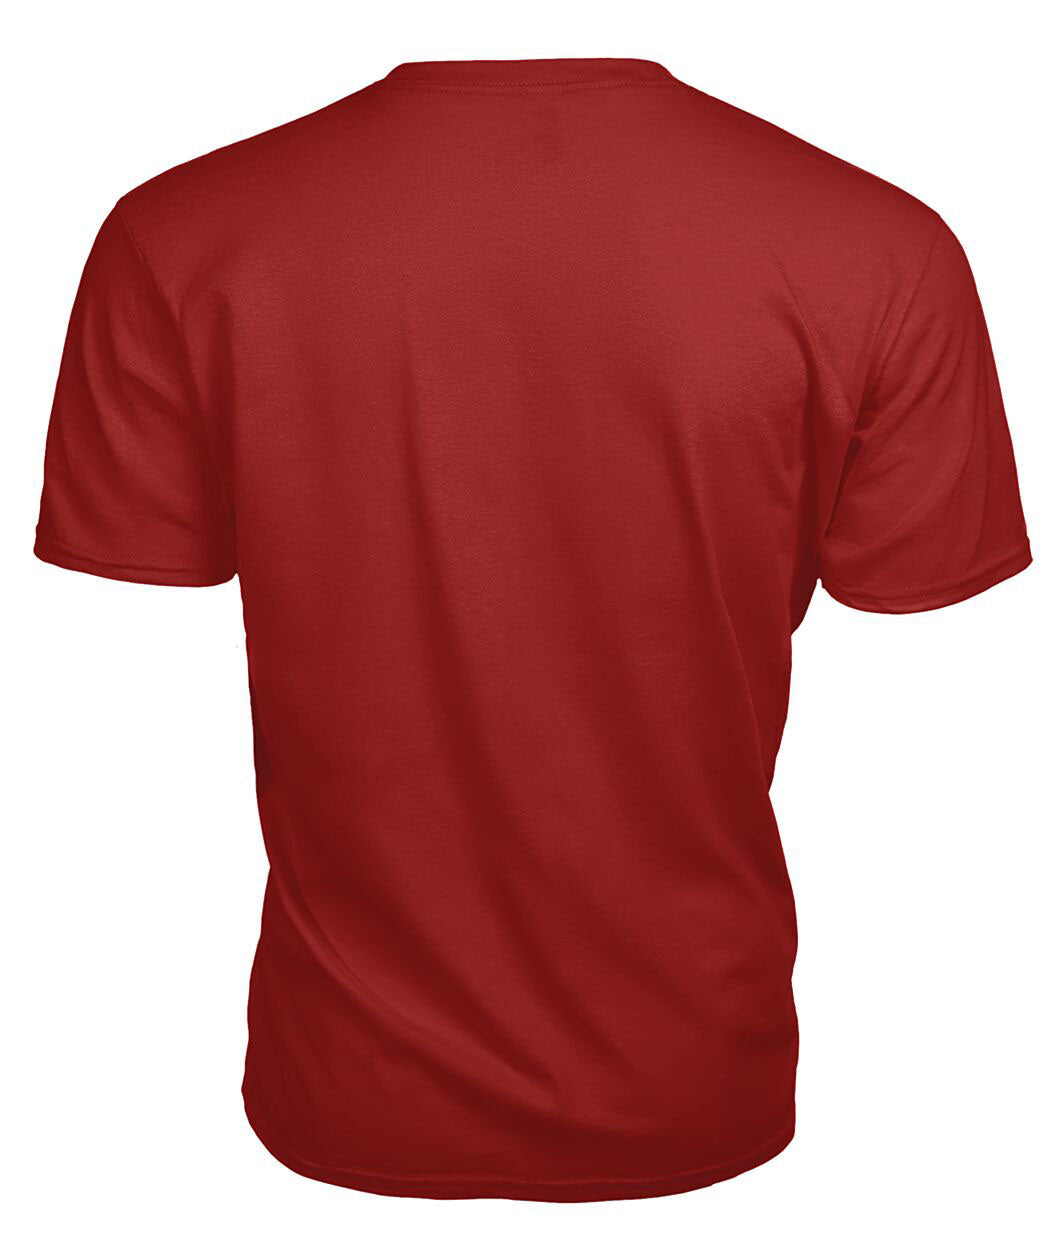 Wishart Dress Tartan Crest 2D T-shirt - Blood Runs Through My Veins Style